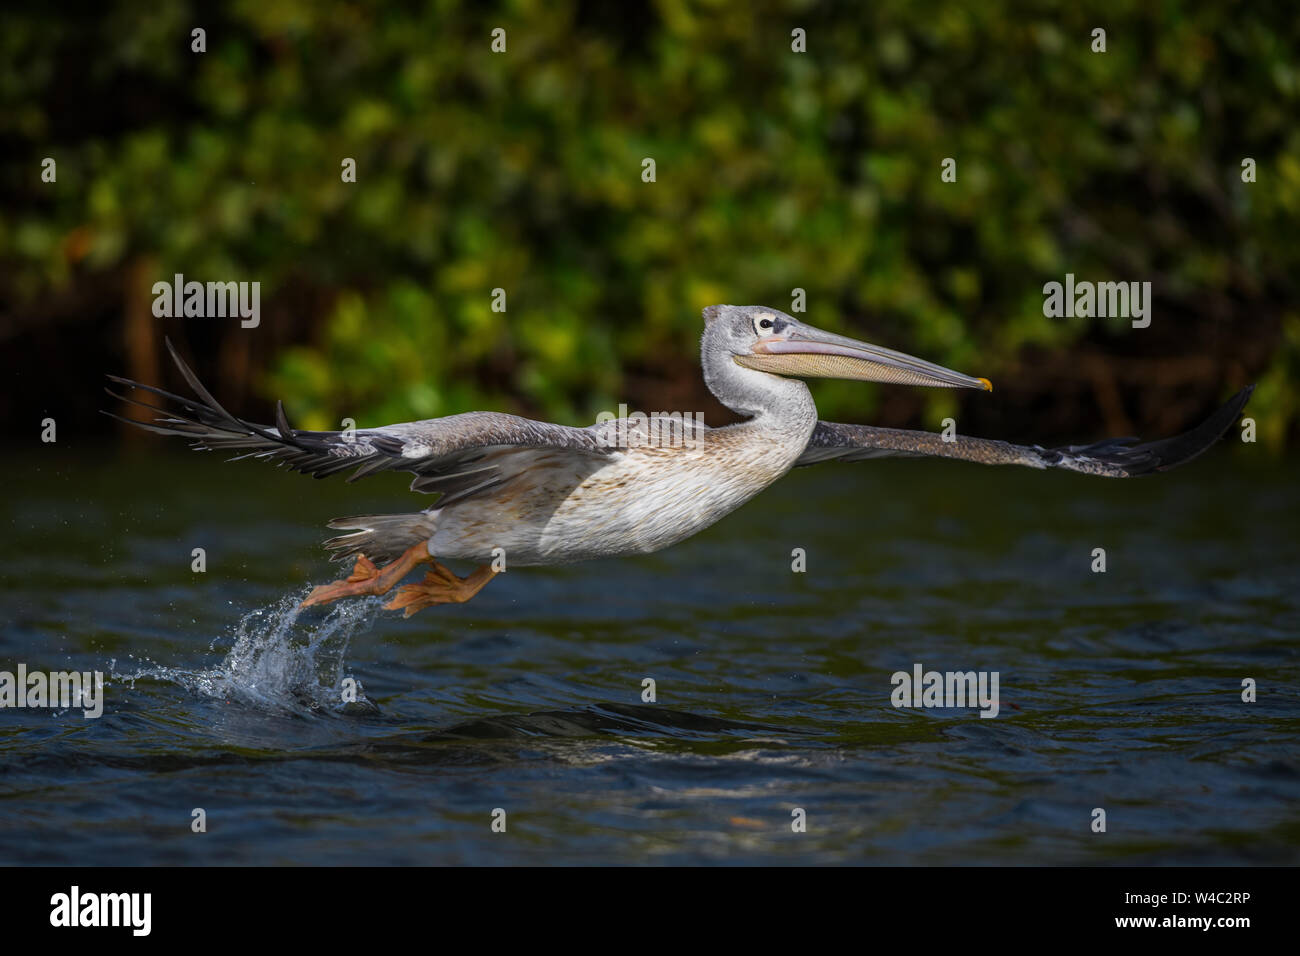 Adossé à rose - Pelican Pelecanus rufescens, grand oiseau d'eau douce africains et les eaux des côtes, la Somone, au Sénégal. Banque D'Images